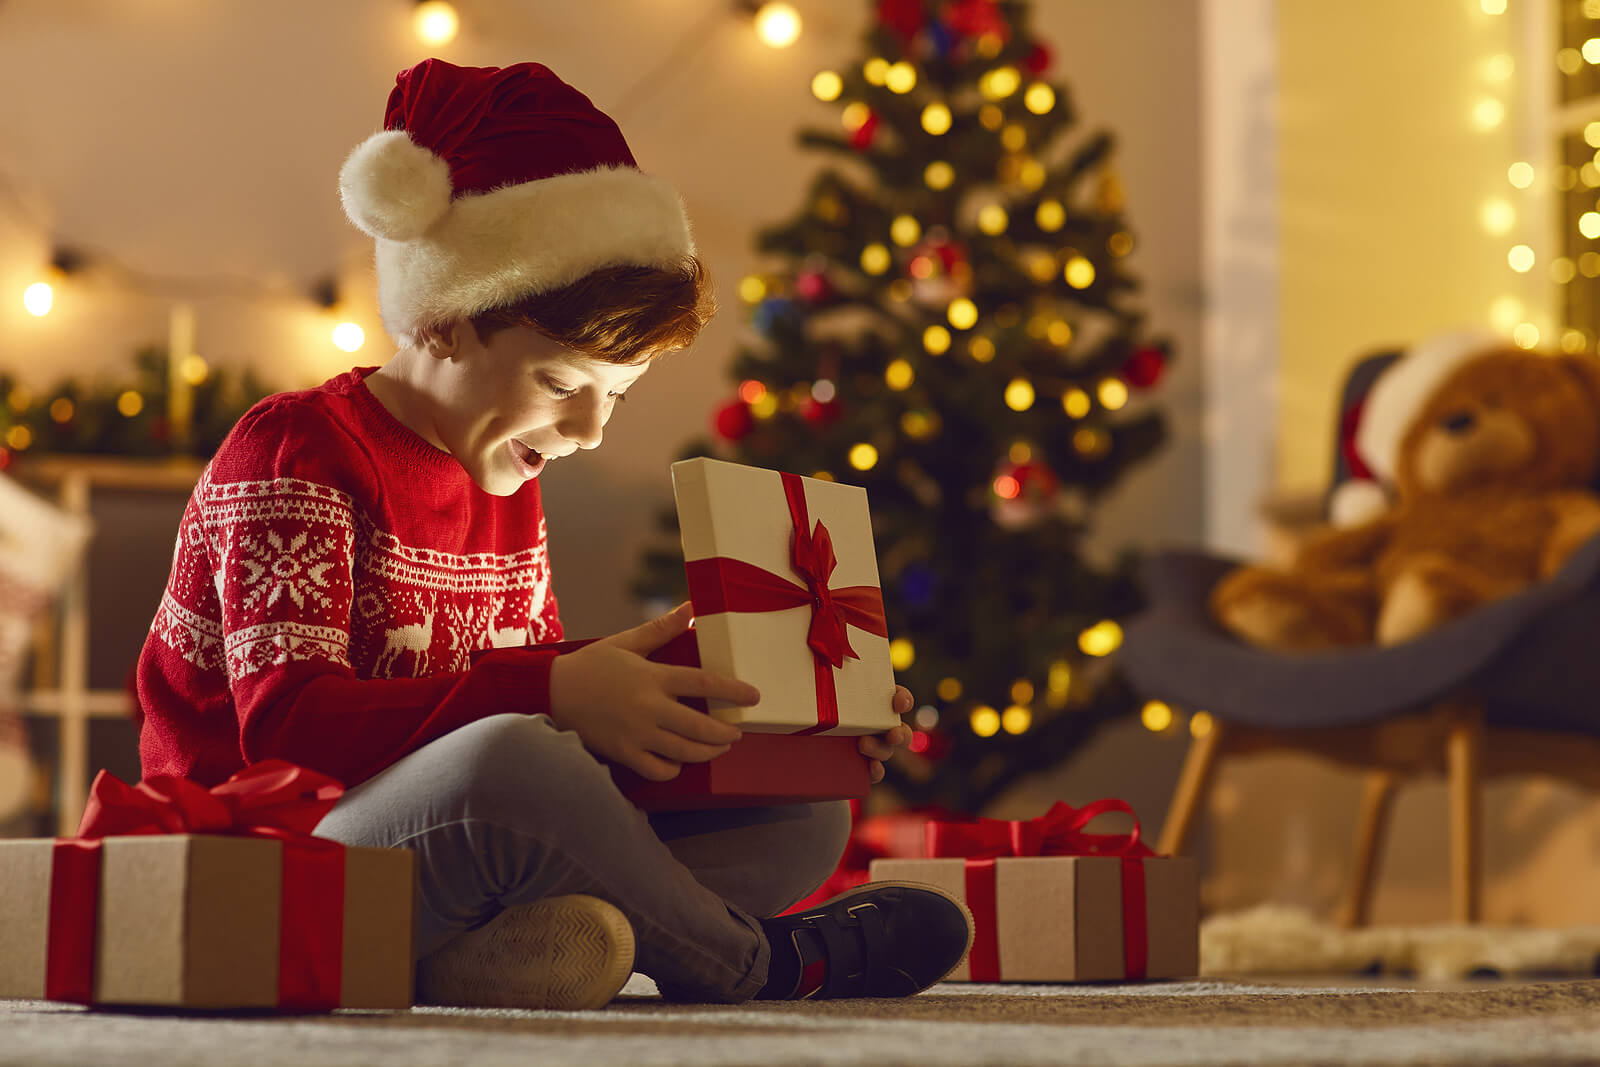 Bambino che apre i suoi regali di Natale con entusiasmo.